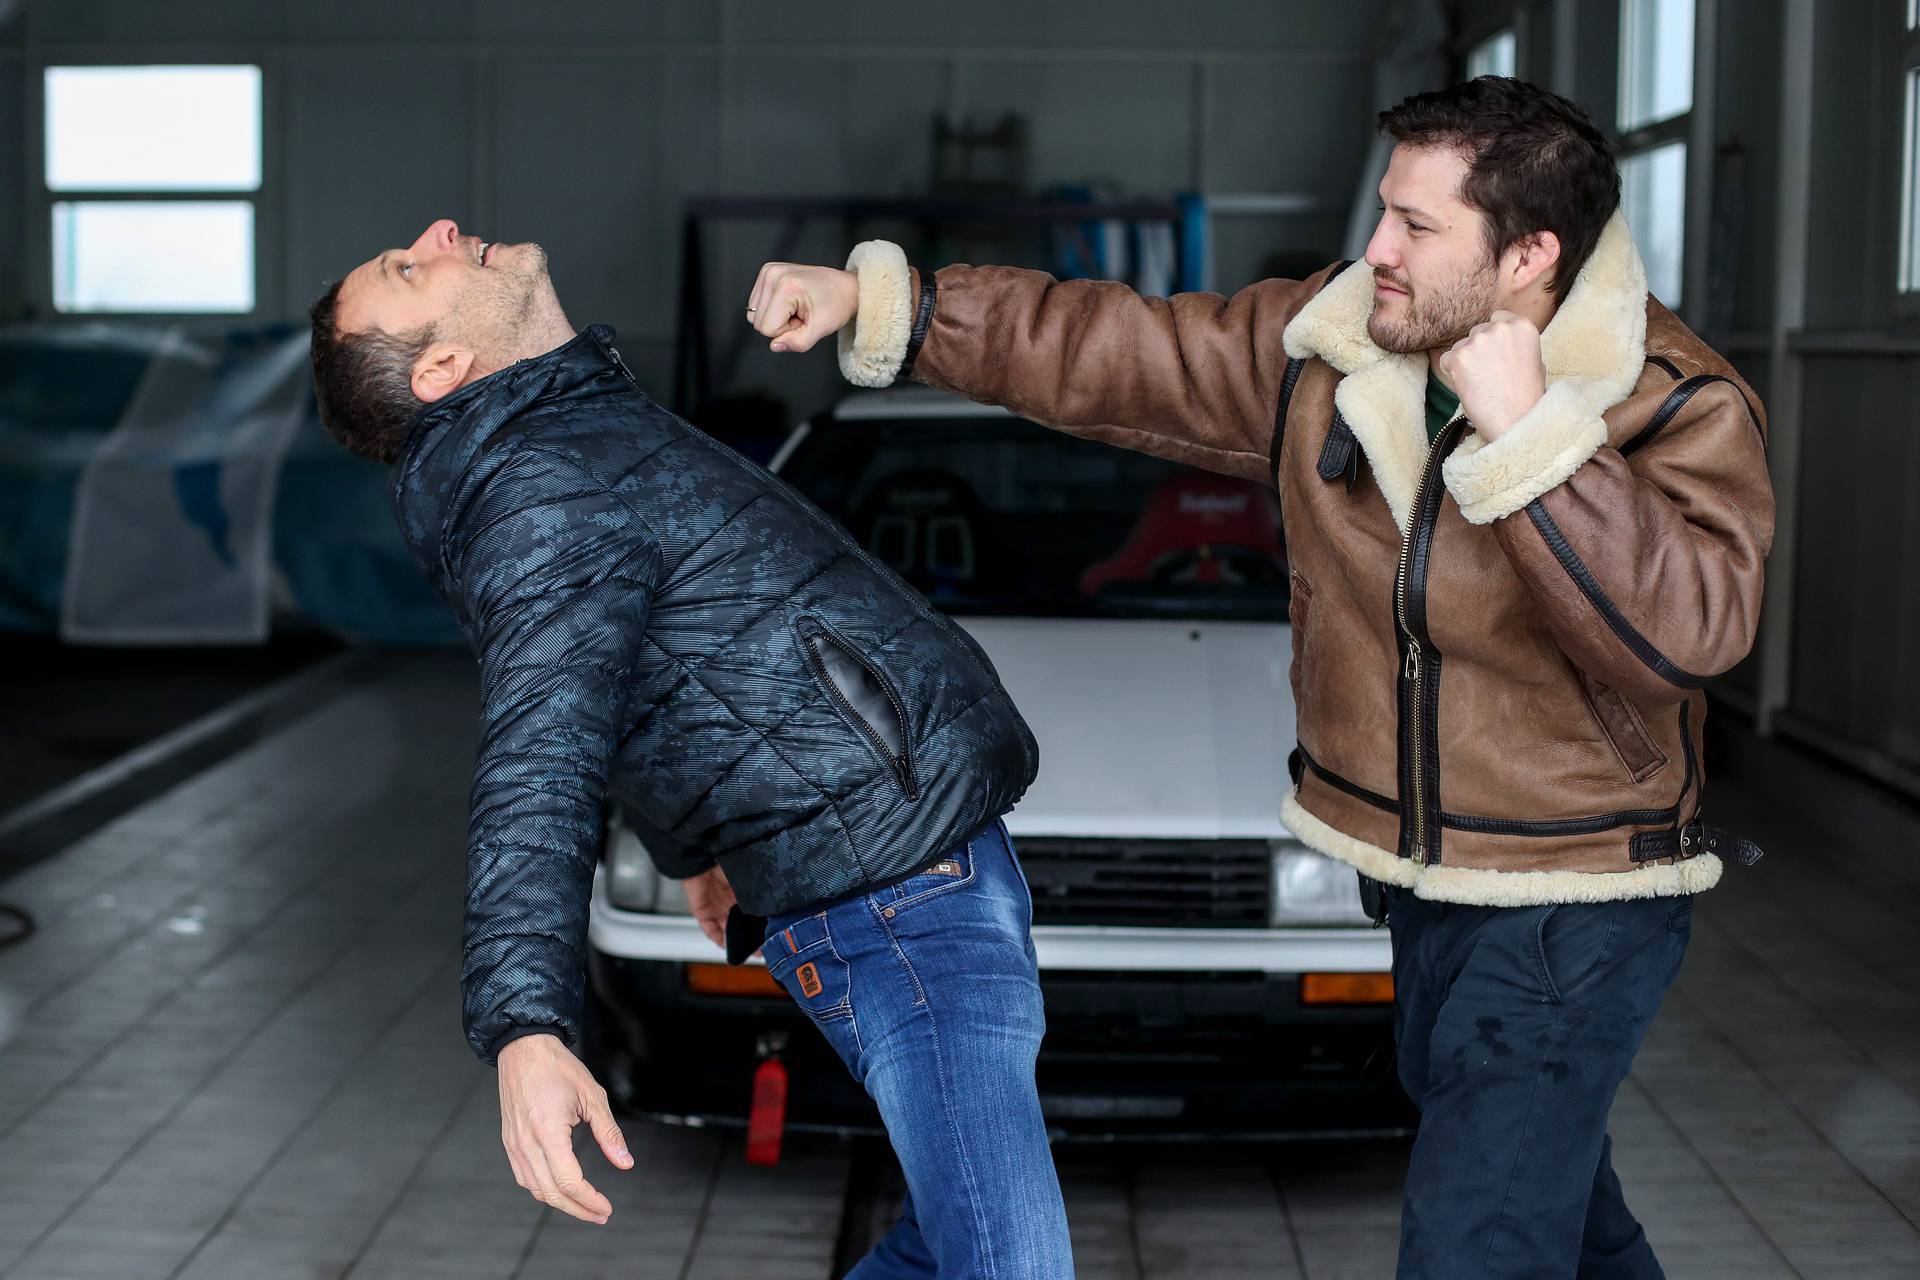 Croata i Šebalj 'zaplesali' tango na snijegu: Riknuo nam je auto